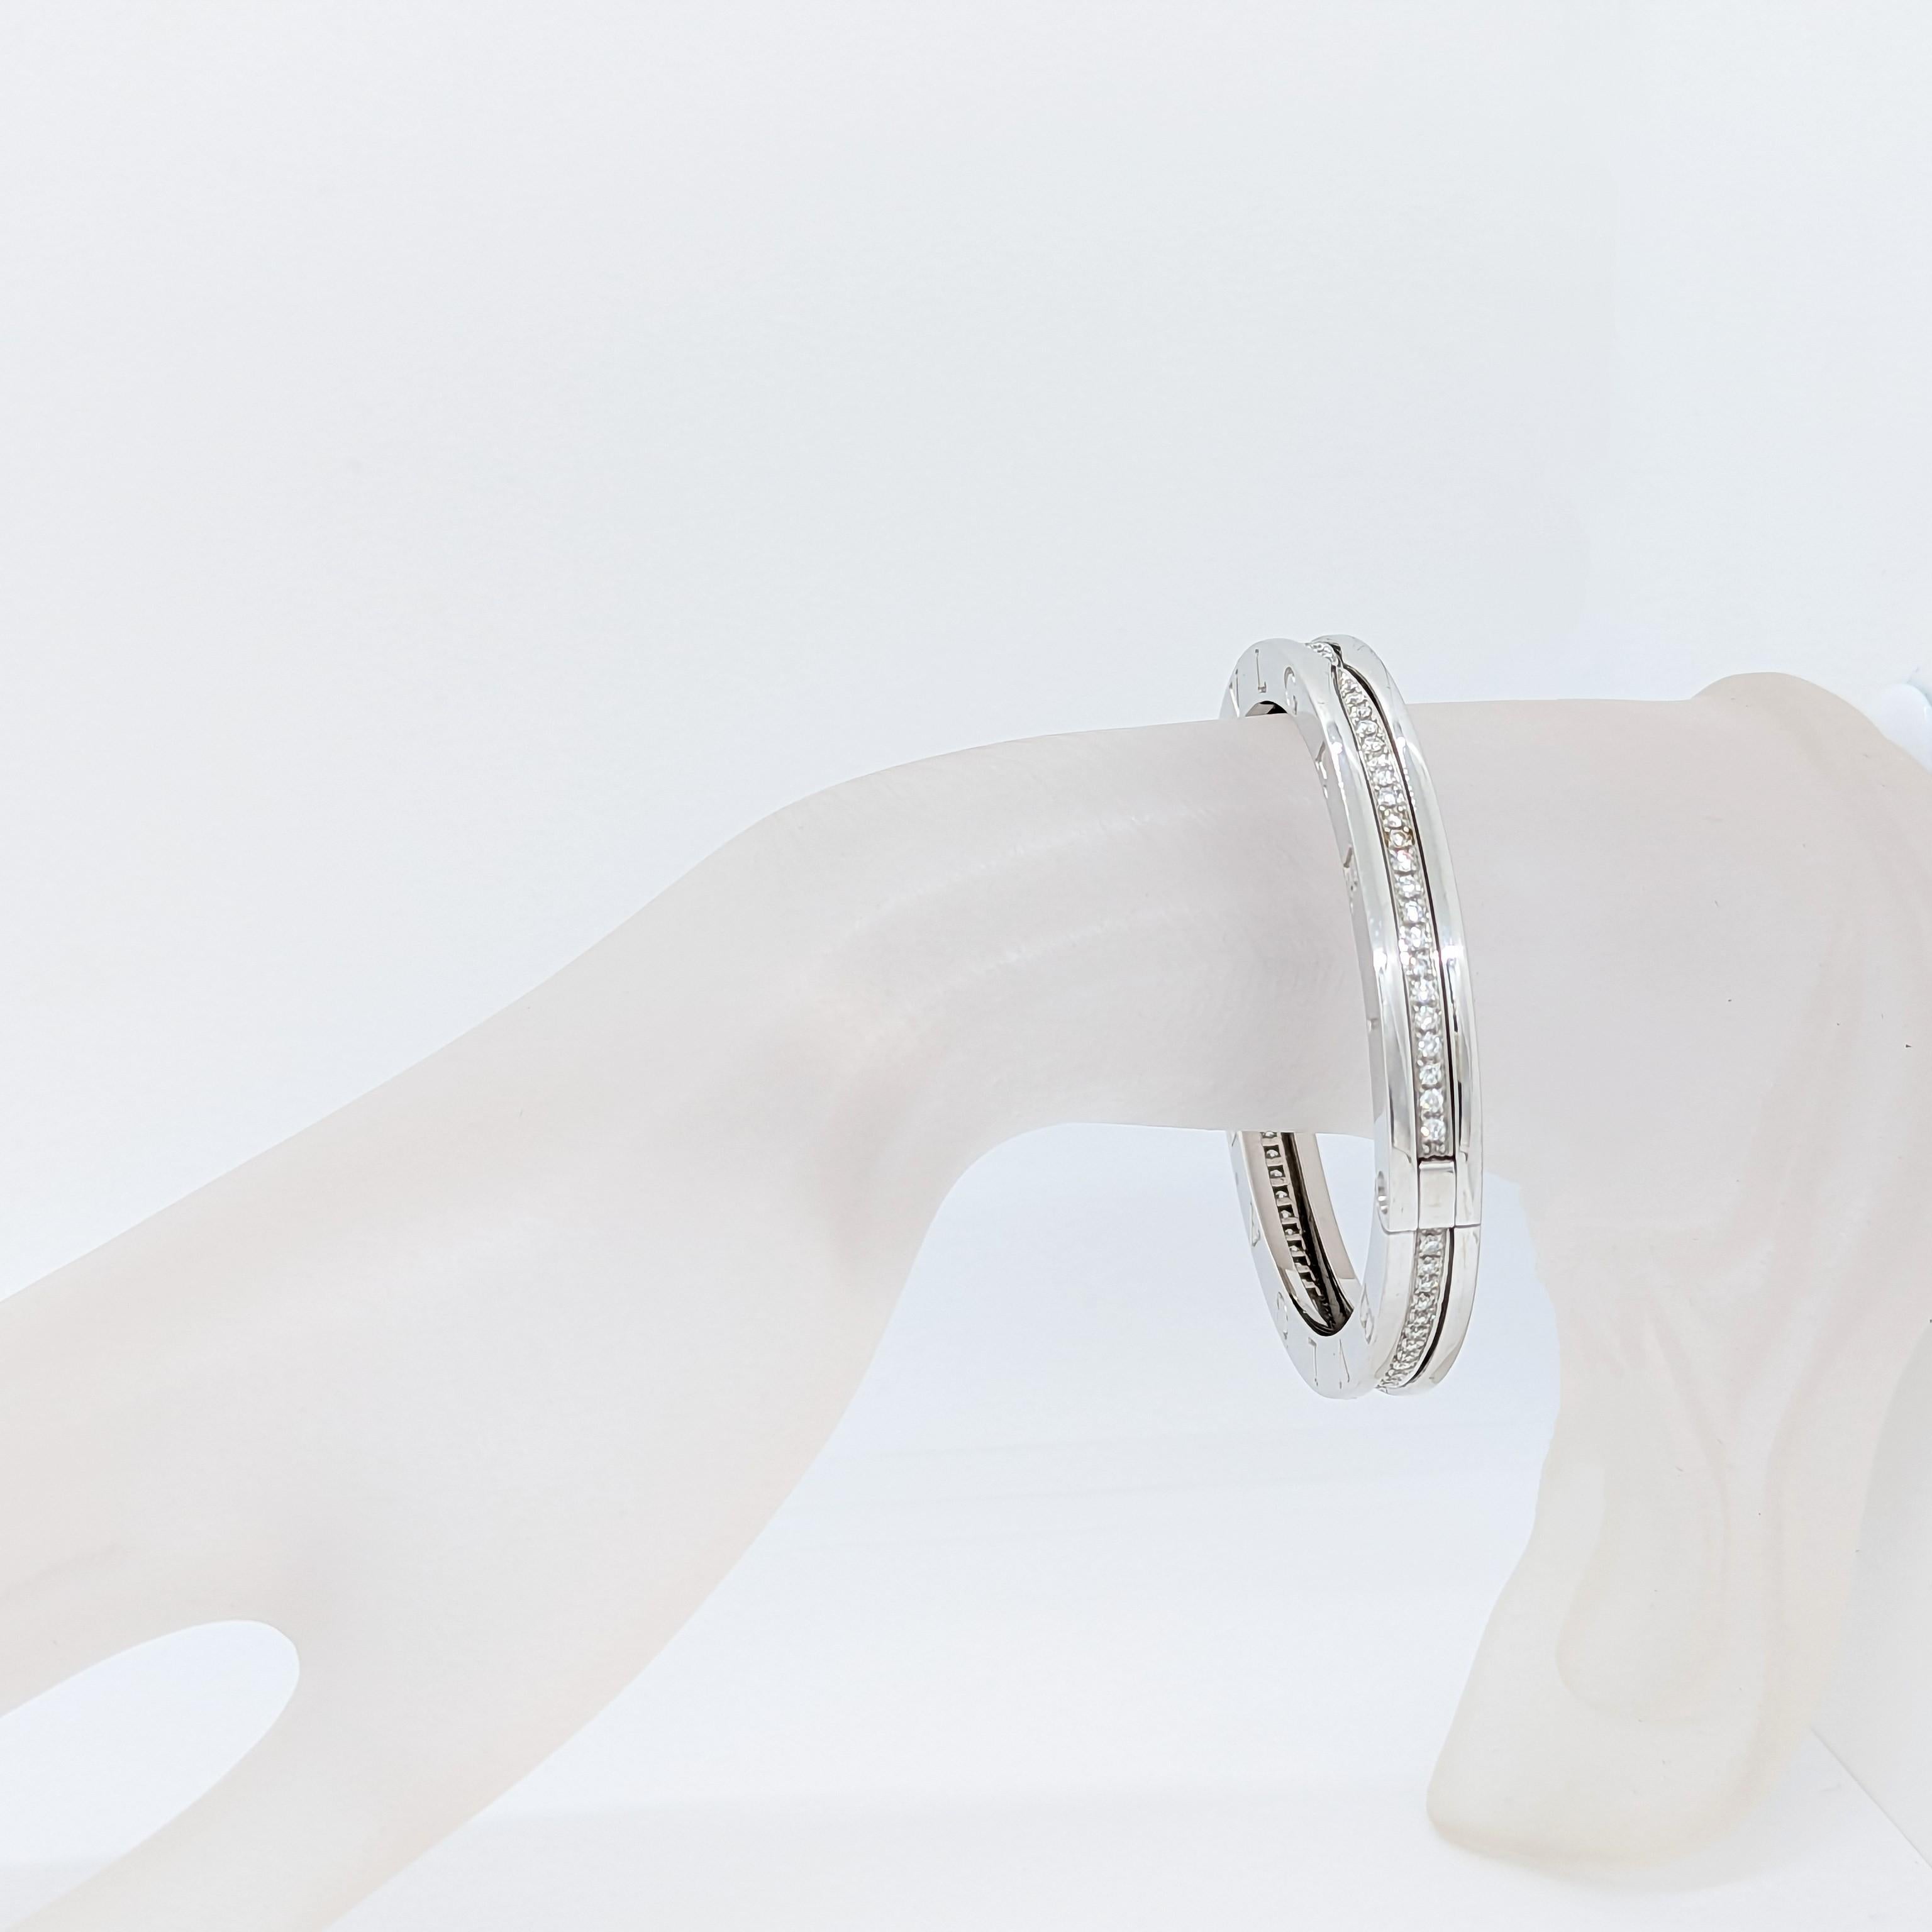 Magnifique bracelet Bvlgari de succession avec des diamants blancs ronds de bonne qualité et fait à la main en or blanc 18k. Ce modèle, appelé B Zero, fait partie de la collection classique de Bvlgari. Style actuel vendu dans le magasin.